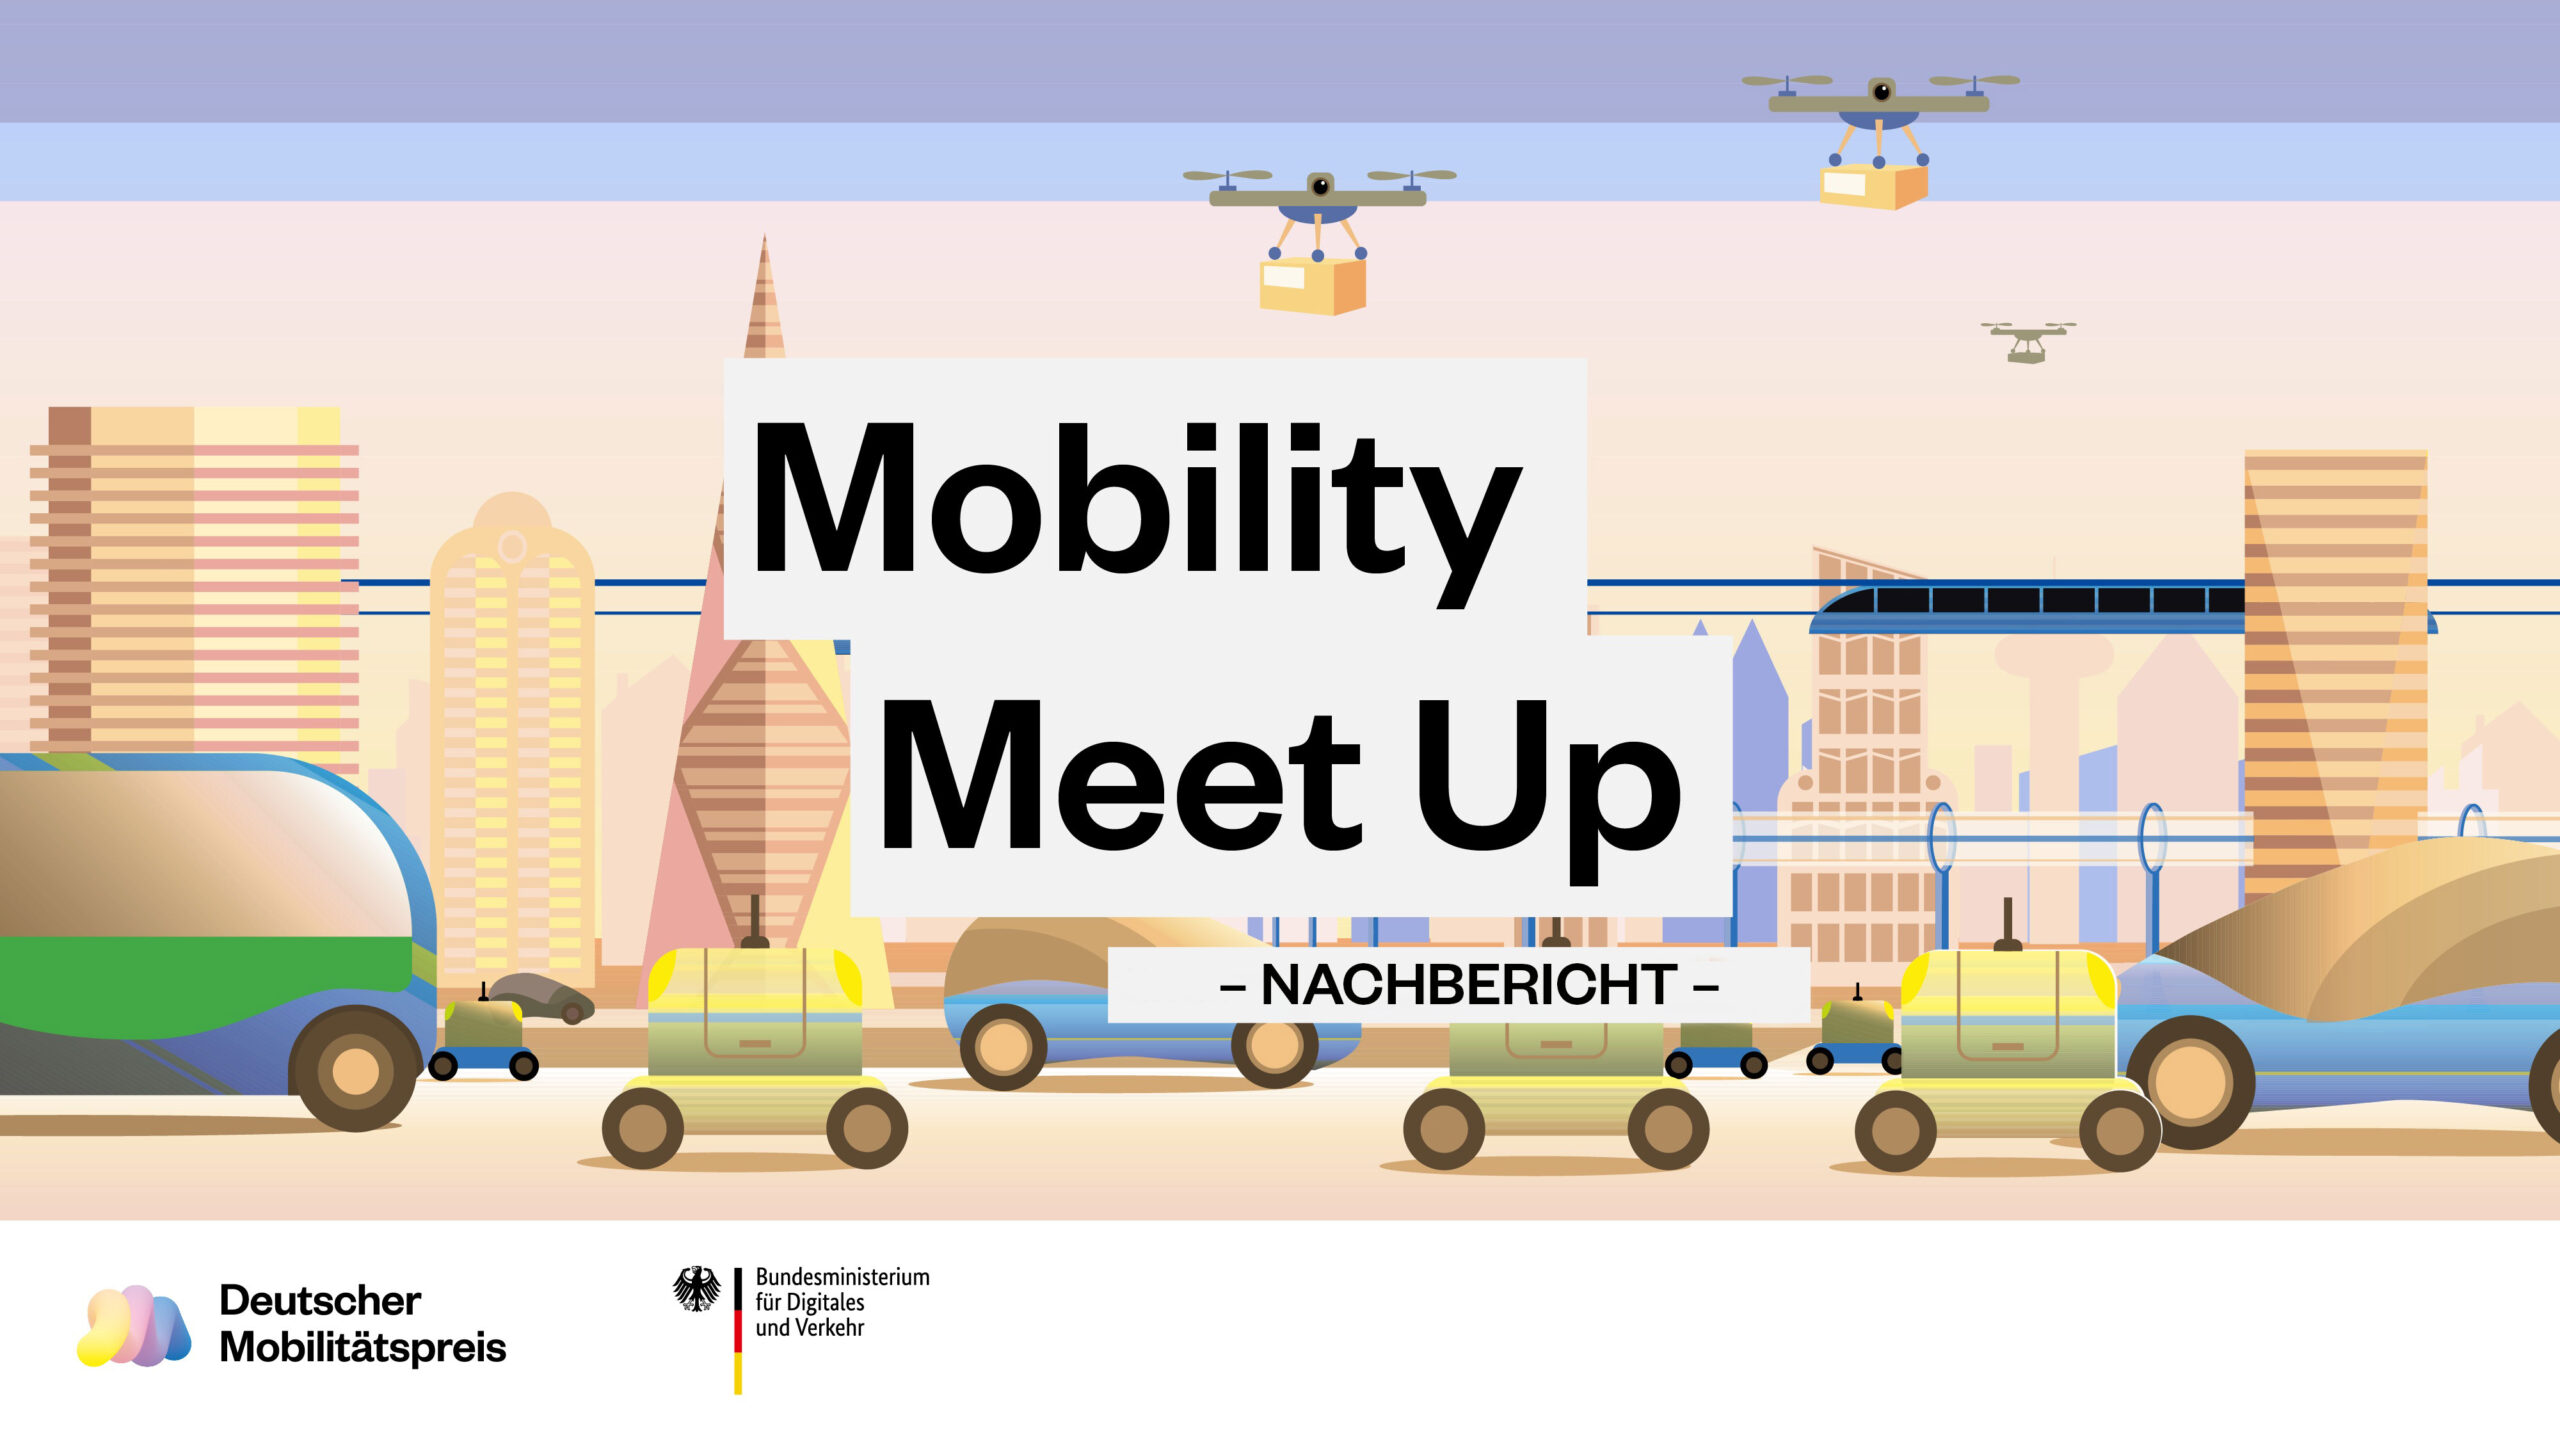 DMP-Mobility-Meet-Up-Nachbericht-DE